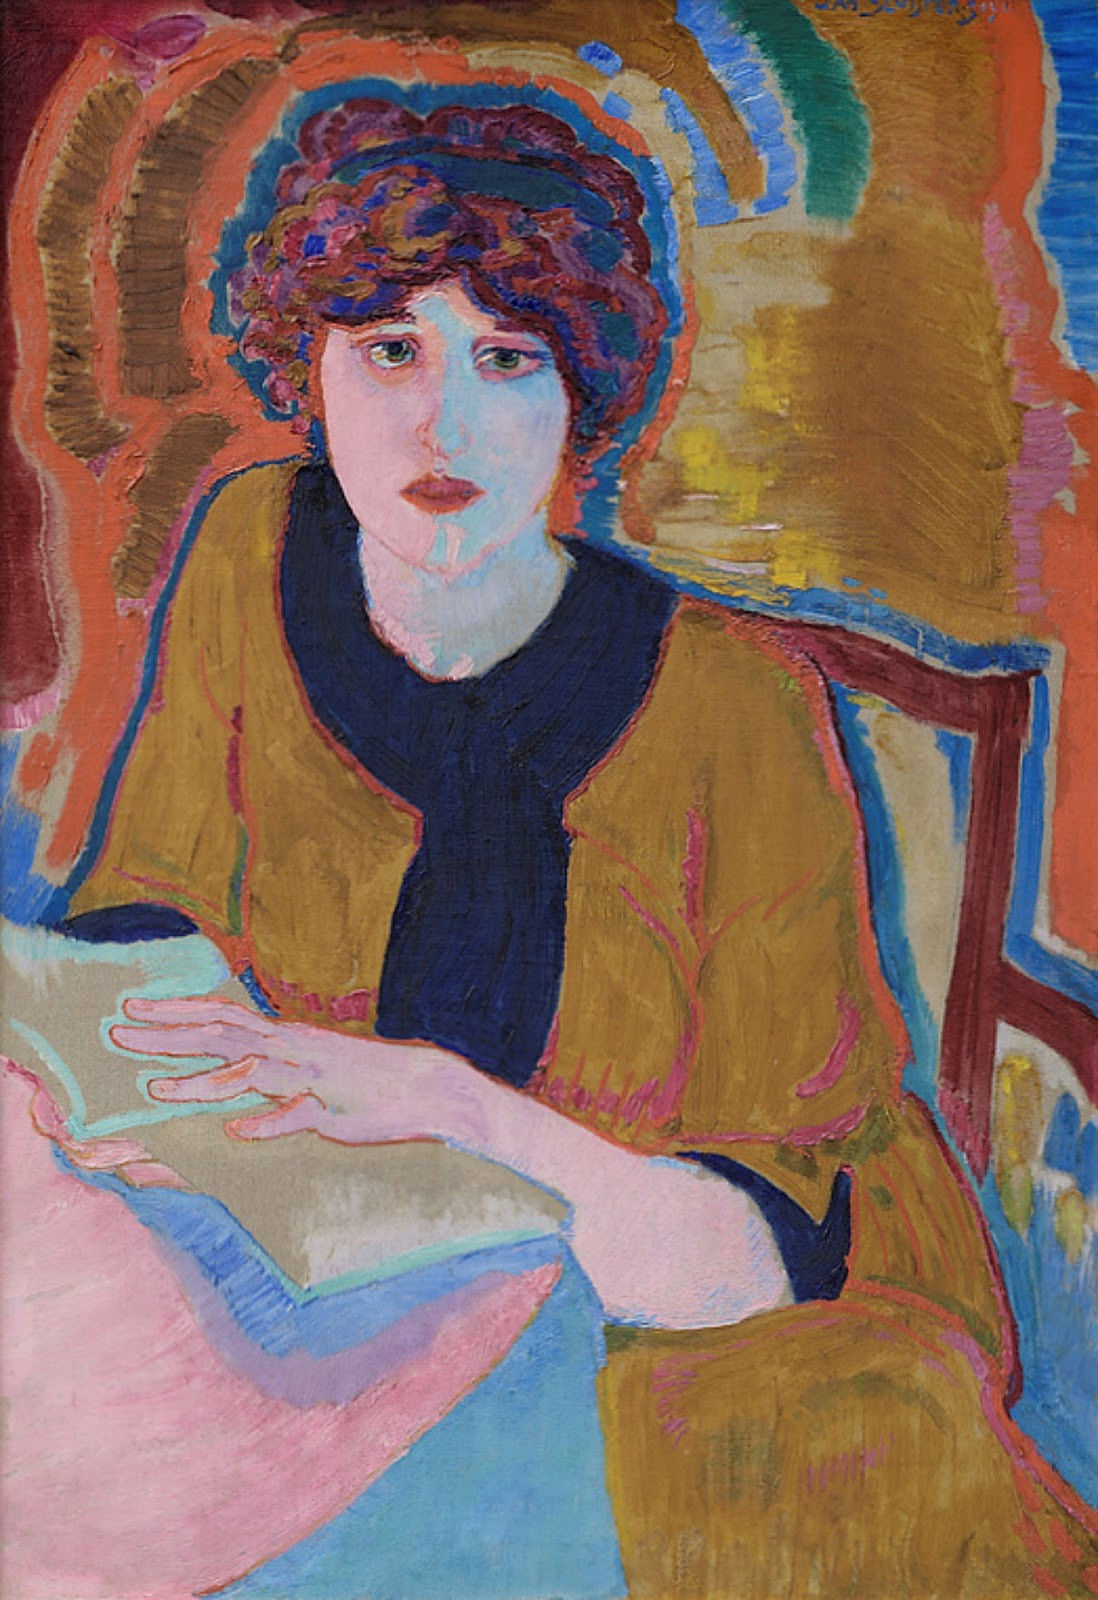 'Lezende vrouw' (Greet van Cooten), 1911, Jan Sluijters 